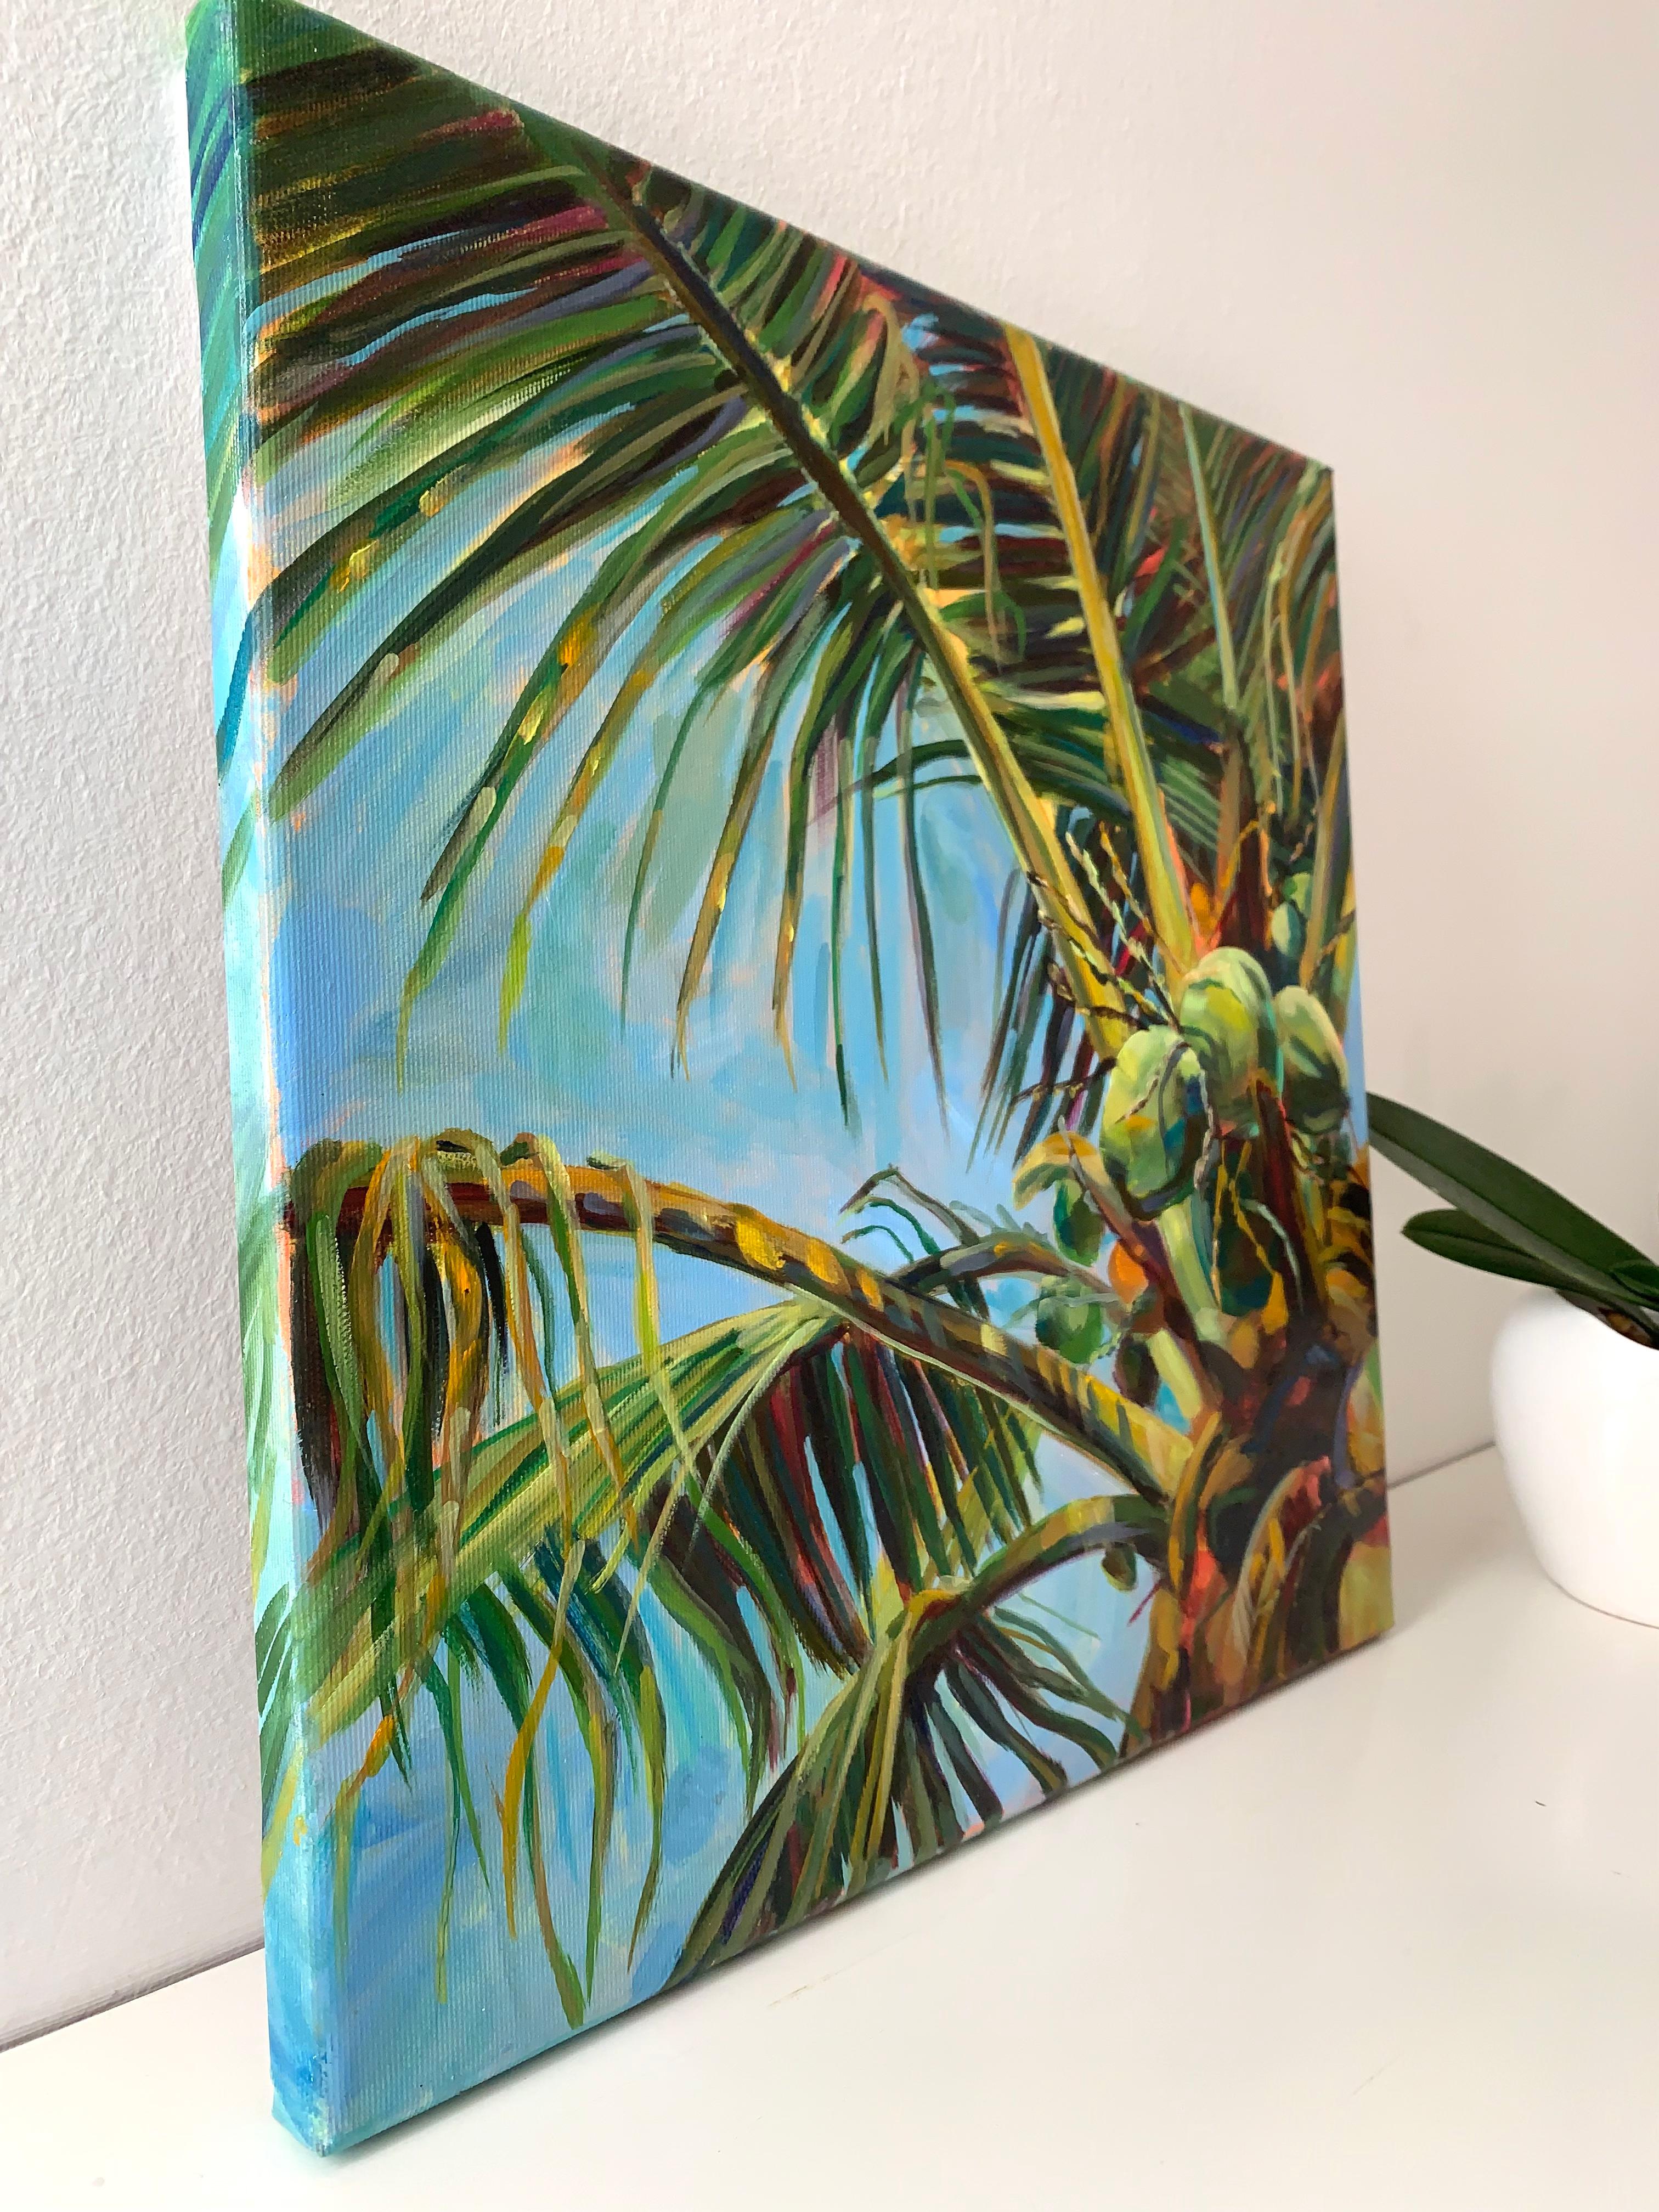 Jungle splendor . Original oil painting. leaves of palms - Coastal vibes - Impressionist Painting by Momalyu Liubov